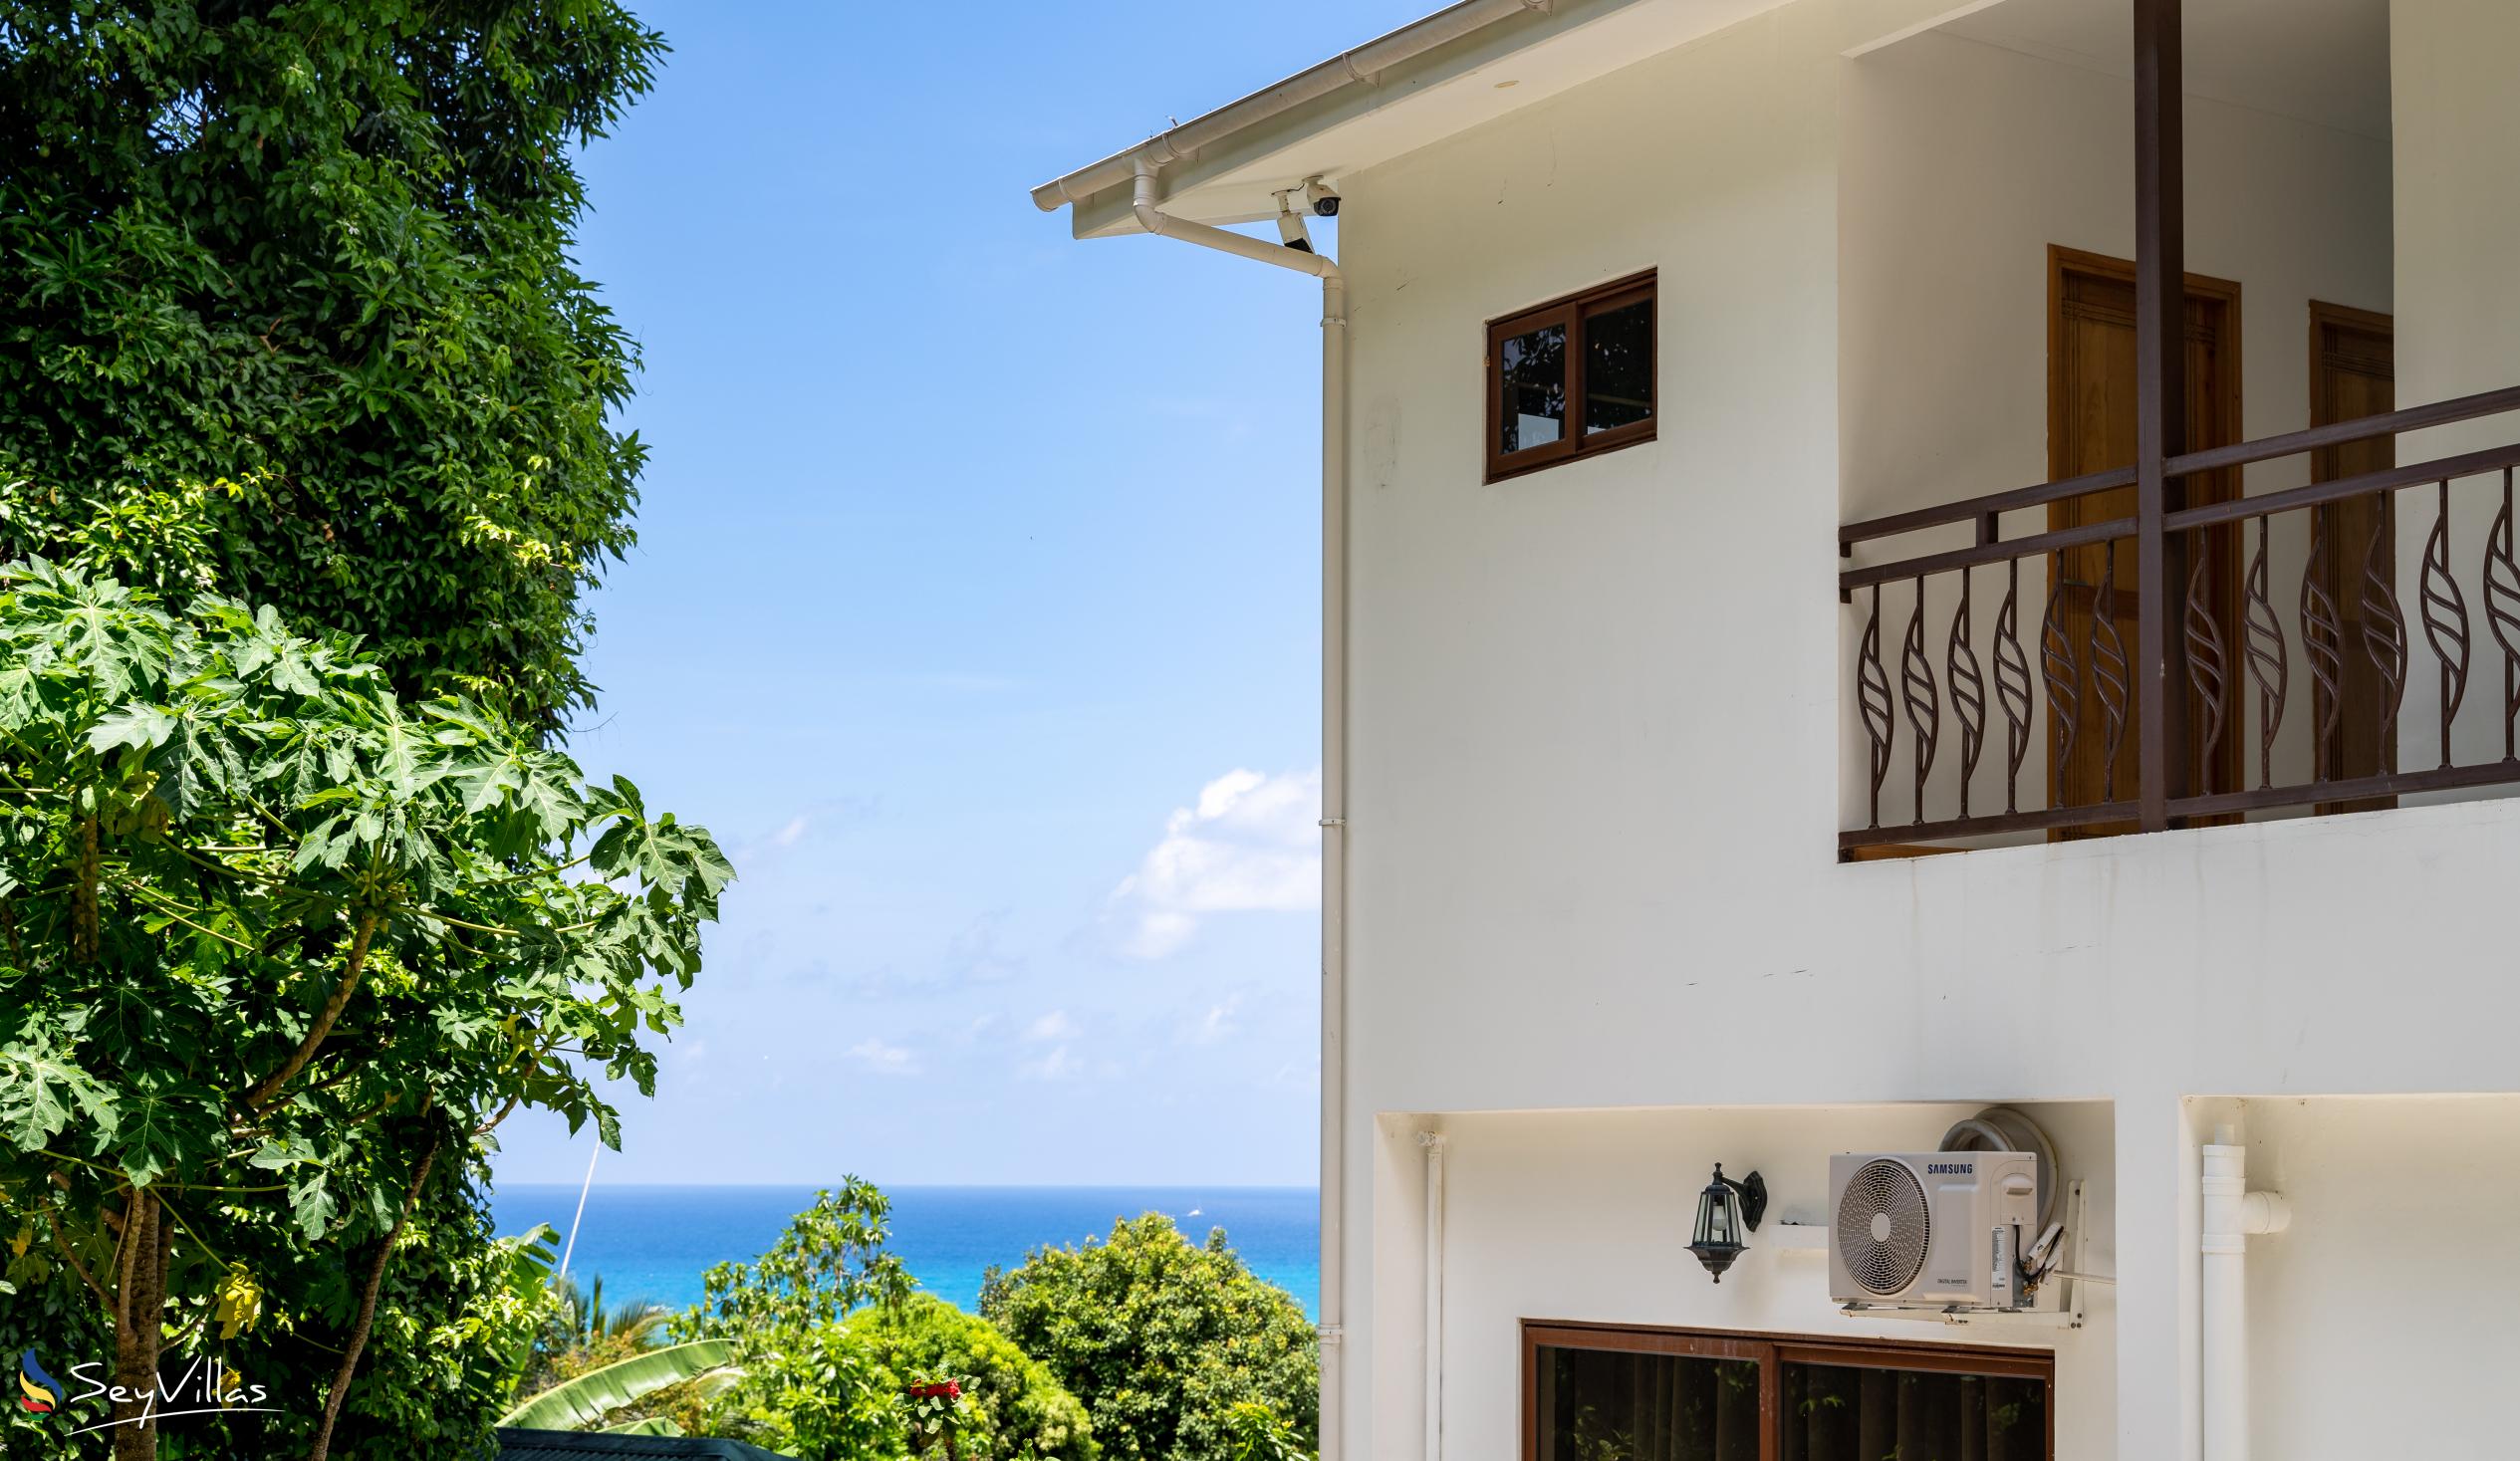 Photo 11: Tama's Holiday Apartments - Outdoor area - Mahé (Seychelles)